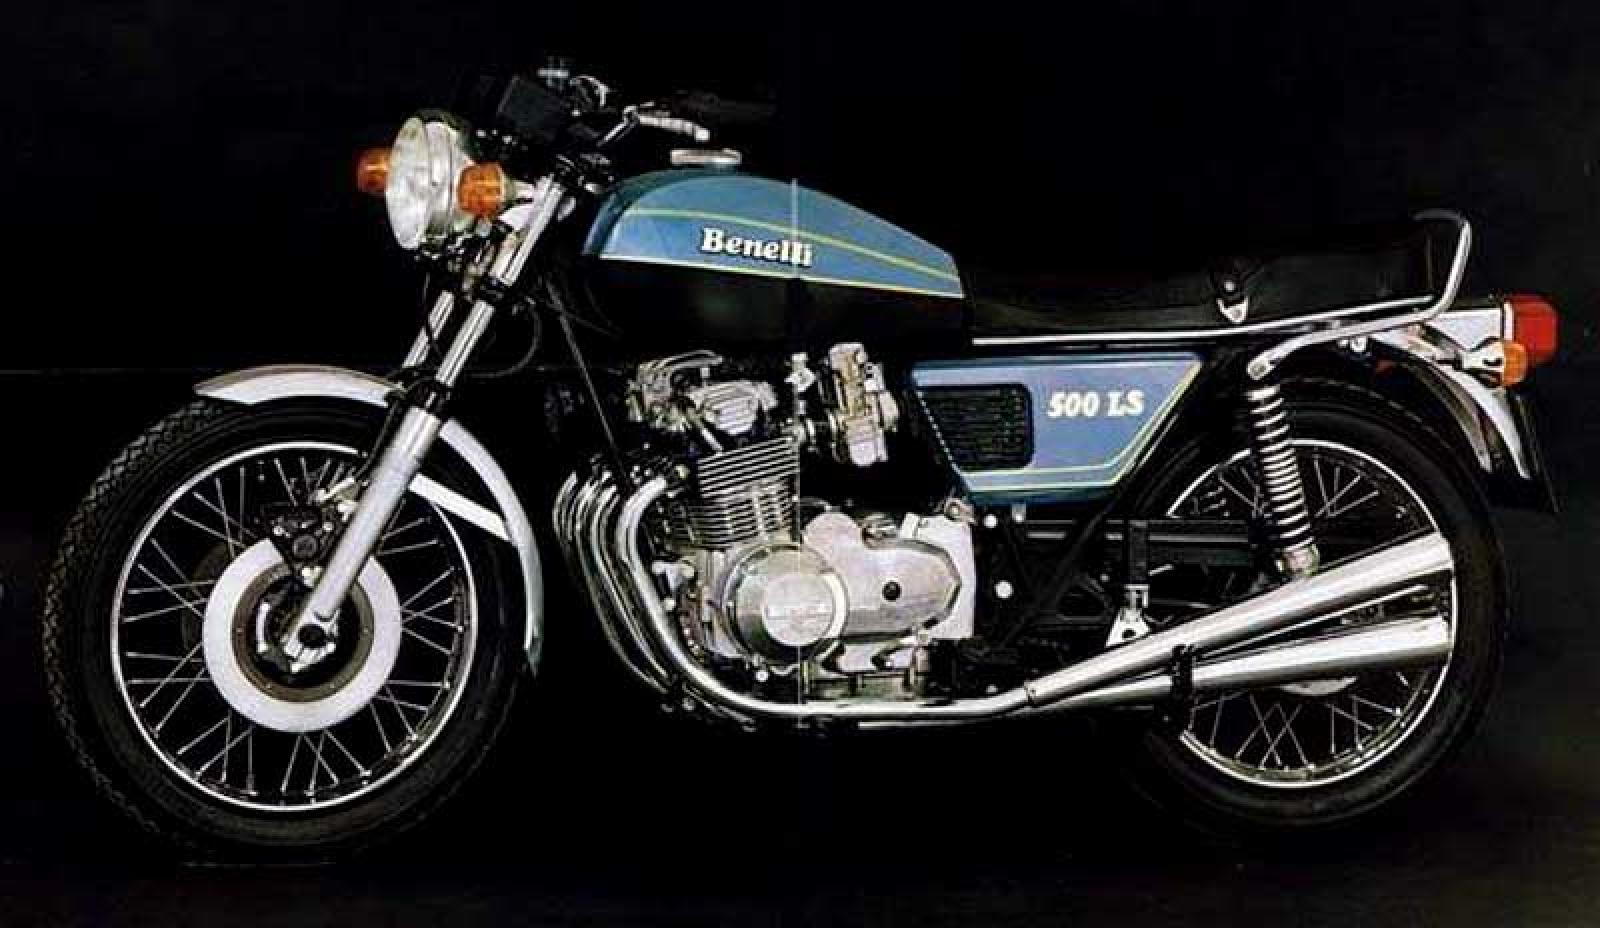 Benelli 500 LS 1980 photo - 4